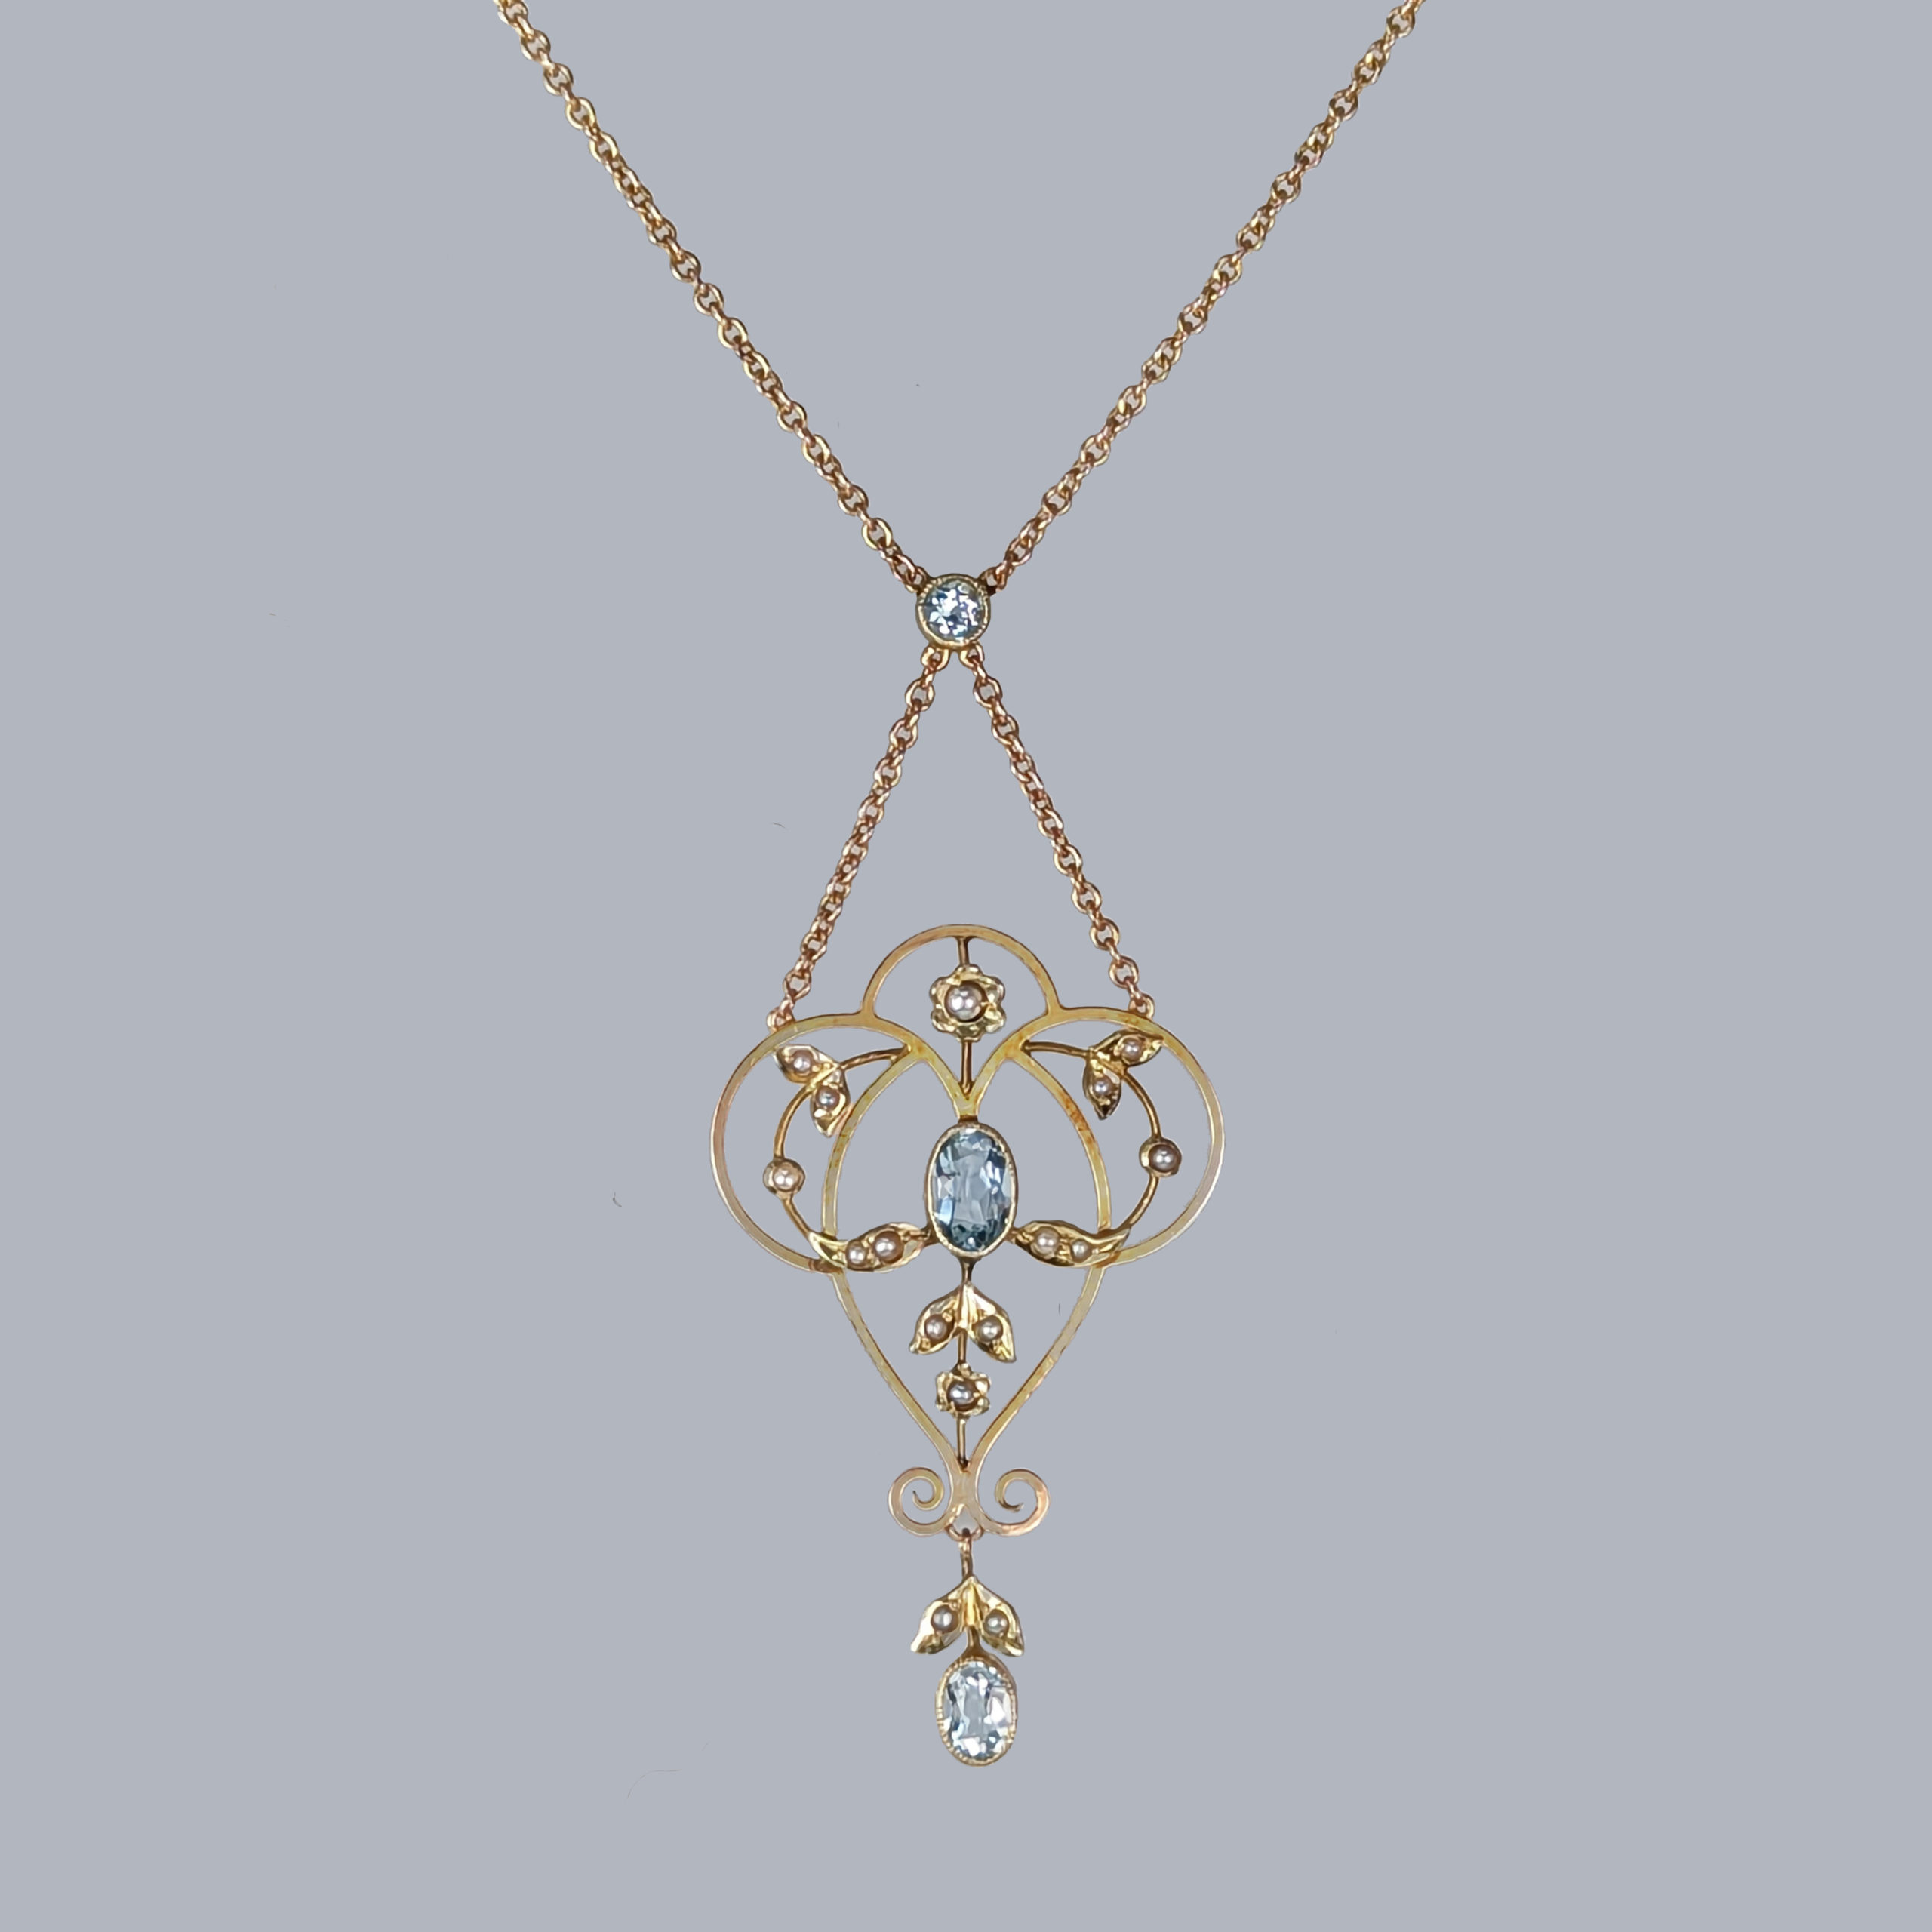 Antique aquamarine pearl necklace